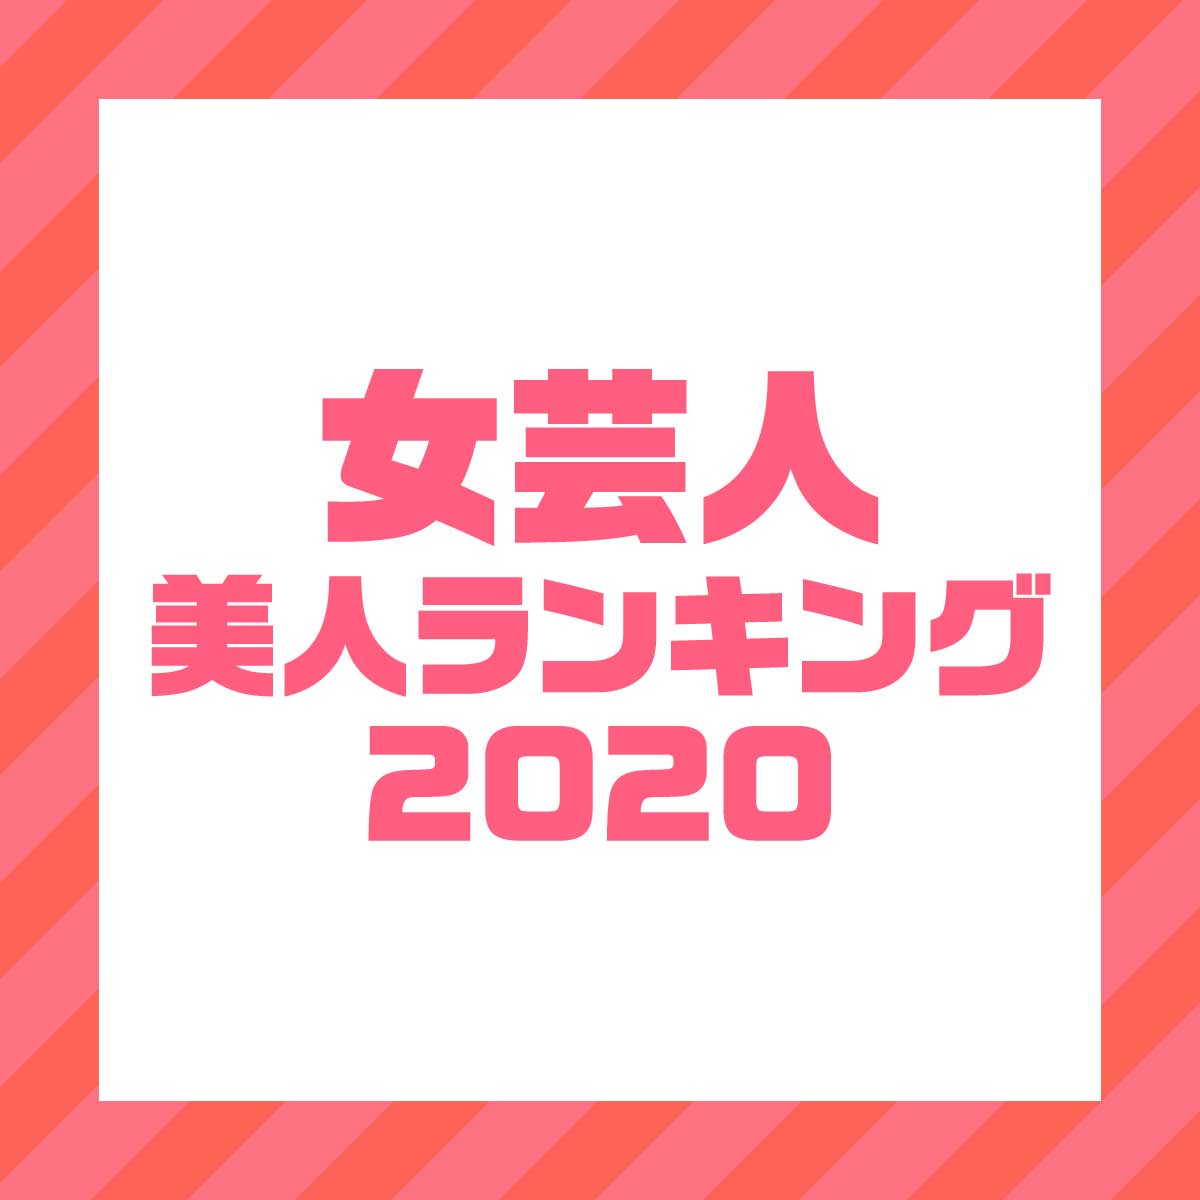 吉本 イケメン ランキング 2020 年